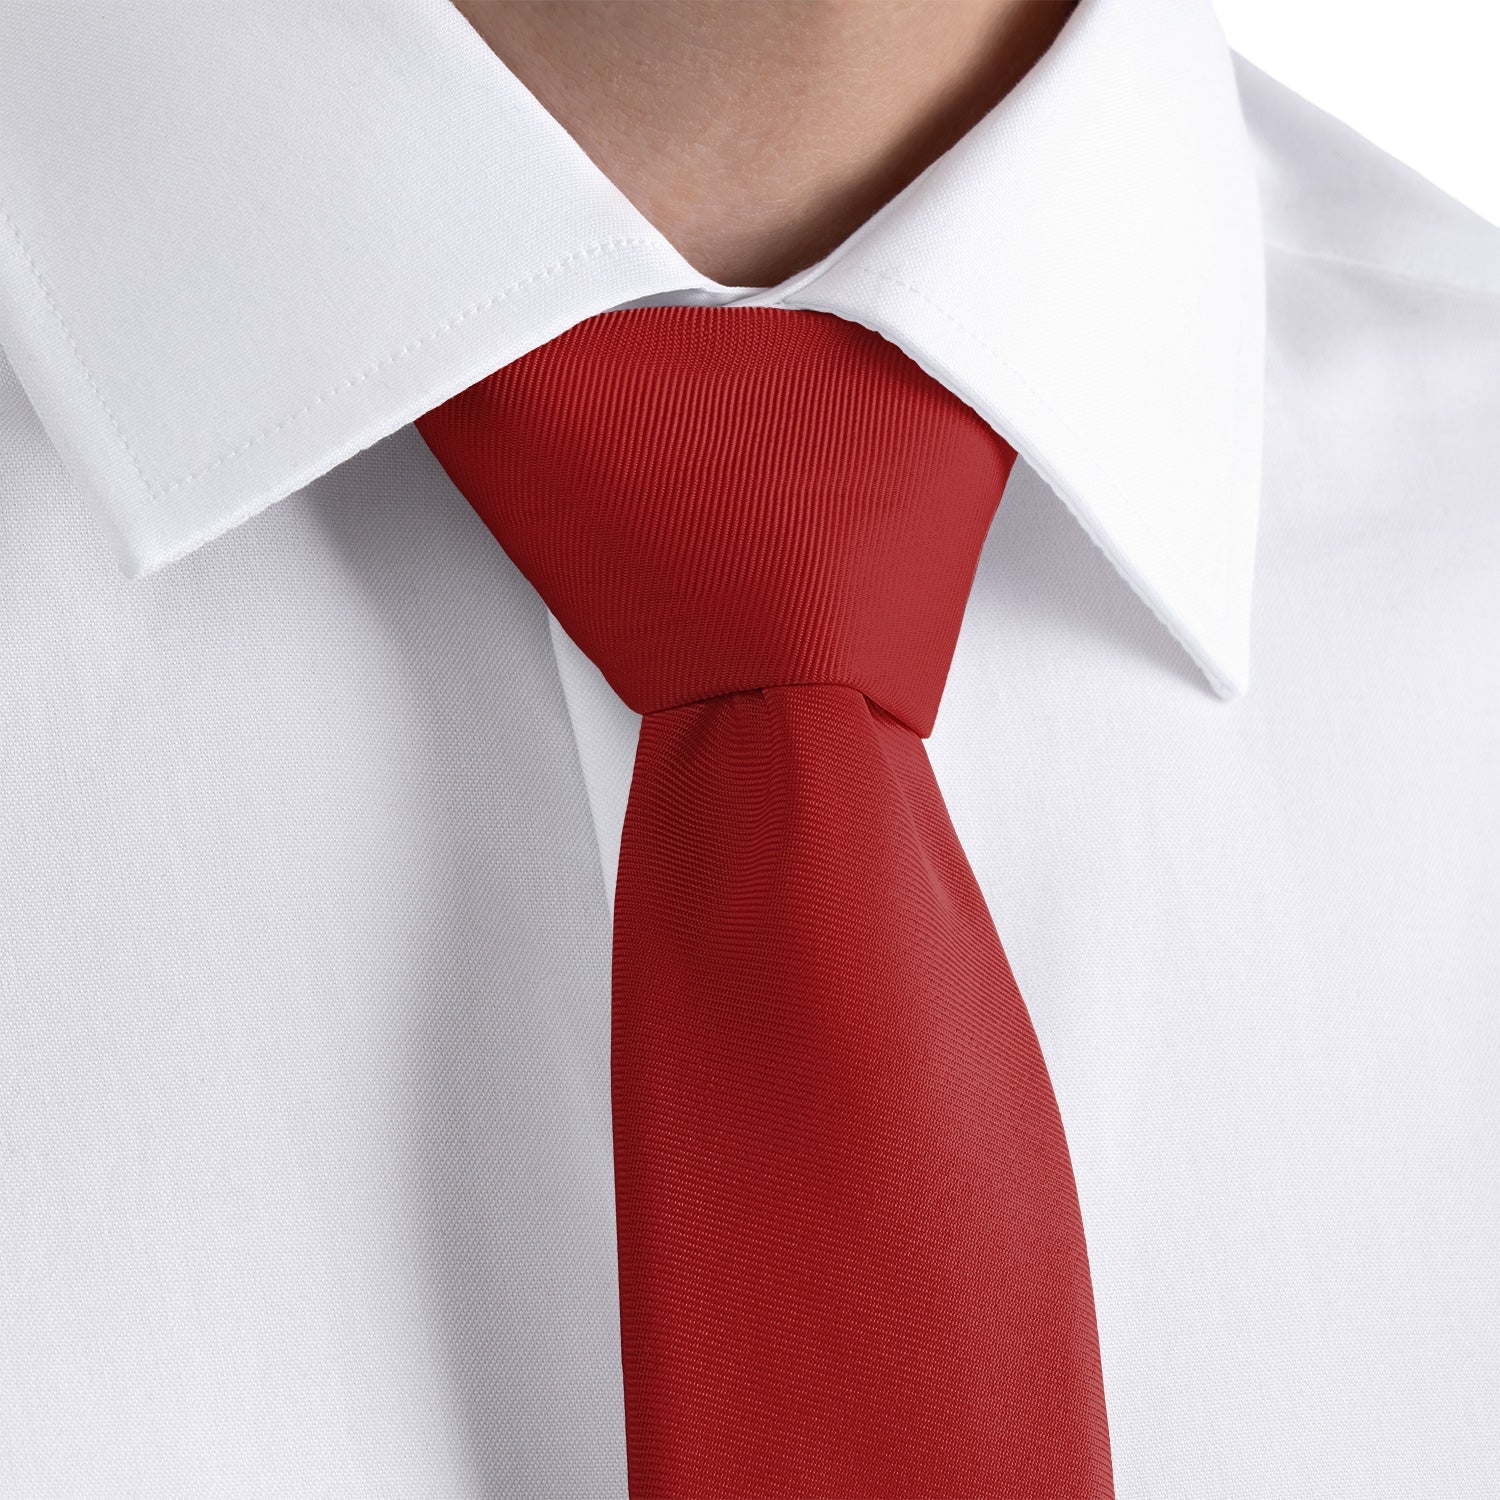 Solid KT Burgundy Necktie - Rolled - Knotty Tie Co.